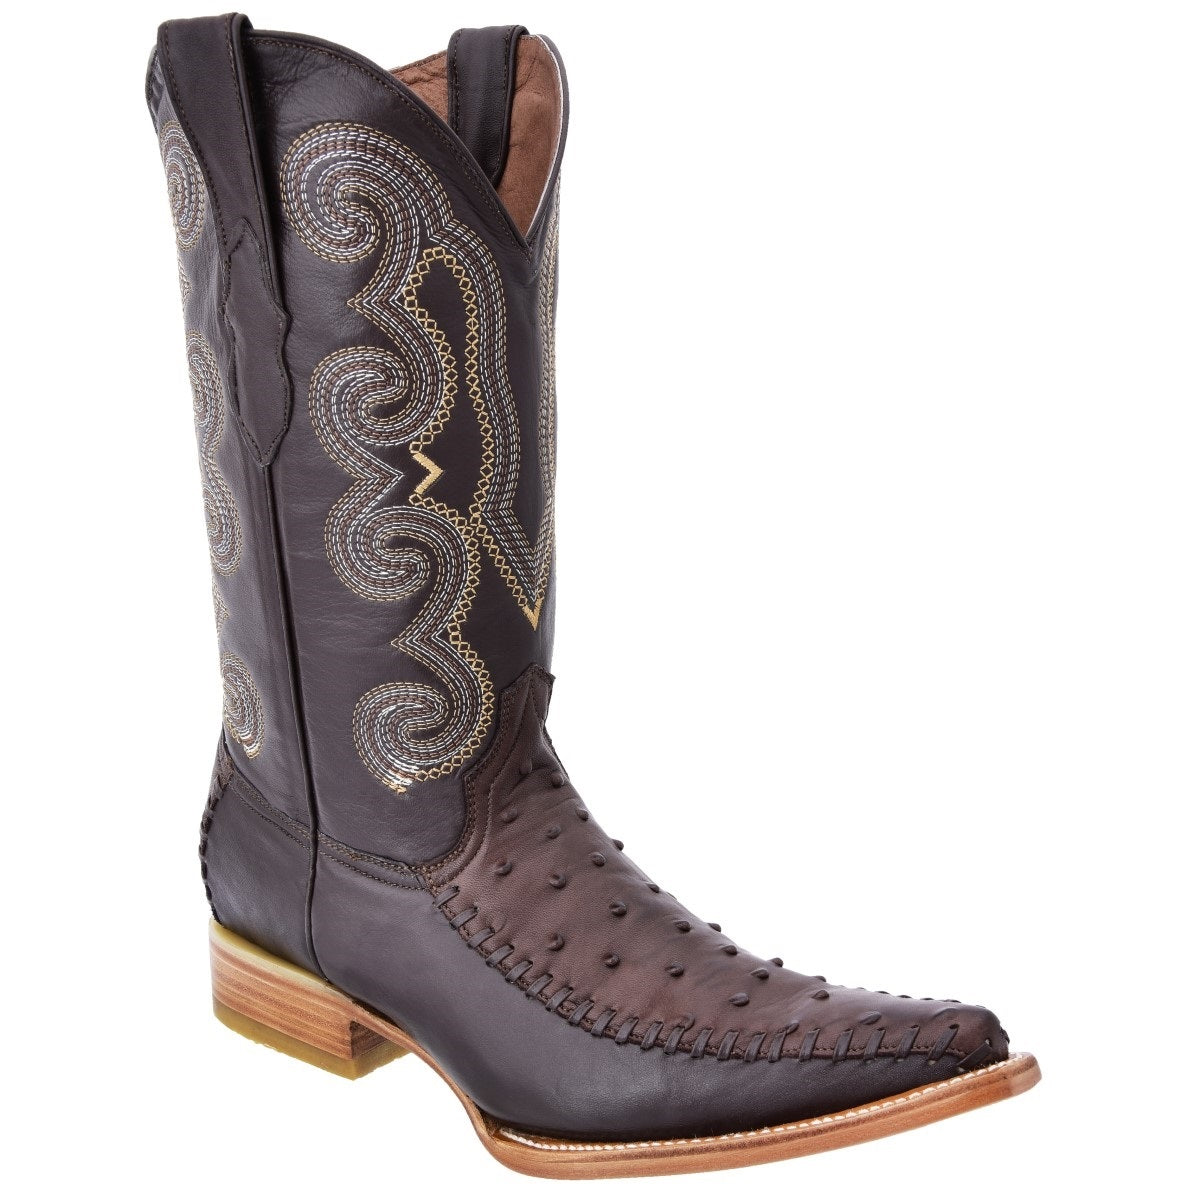 Botas Vaqueras TM-WD0135 - Western Boots